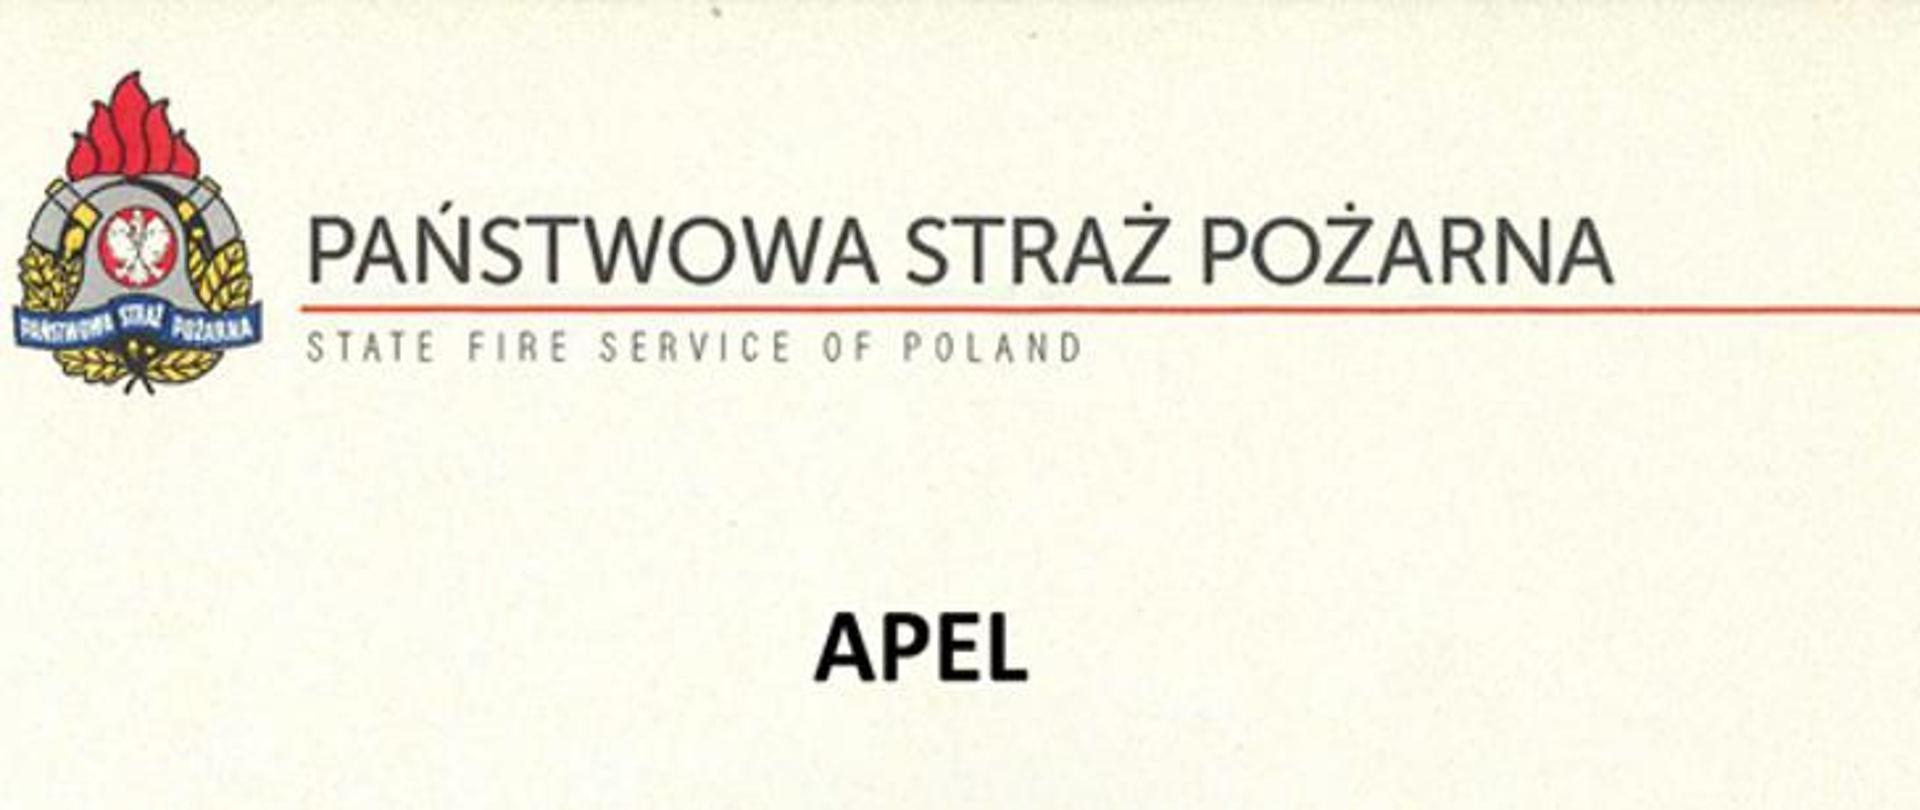 Zdjęcia przedstawia logotyp Państwowej Straży Pożarnej (szary hełm z godłem Polski, 2 szare toporki, czerwone płomienie, żółte liście i napis na niebieskiej wstędze „Państwowa Straż Pożarna”) Obok, nad czerwoną linią, napis wykoanany wielkimi, drukowanymi literami „PAŃSTWOWA STRAŻ POŻARNA”, pod linią mniejszymi drukowanymi literami „STATE FIRE SERVICE OF POLAND”. Na dole słowo APEL